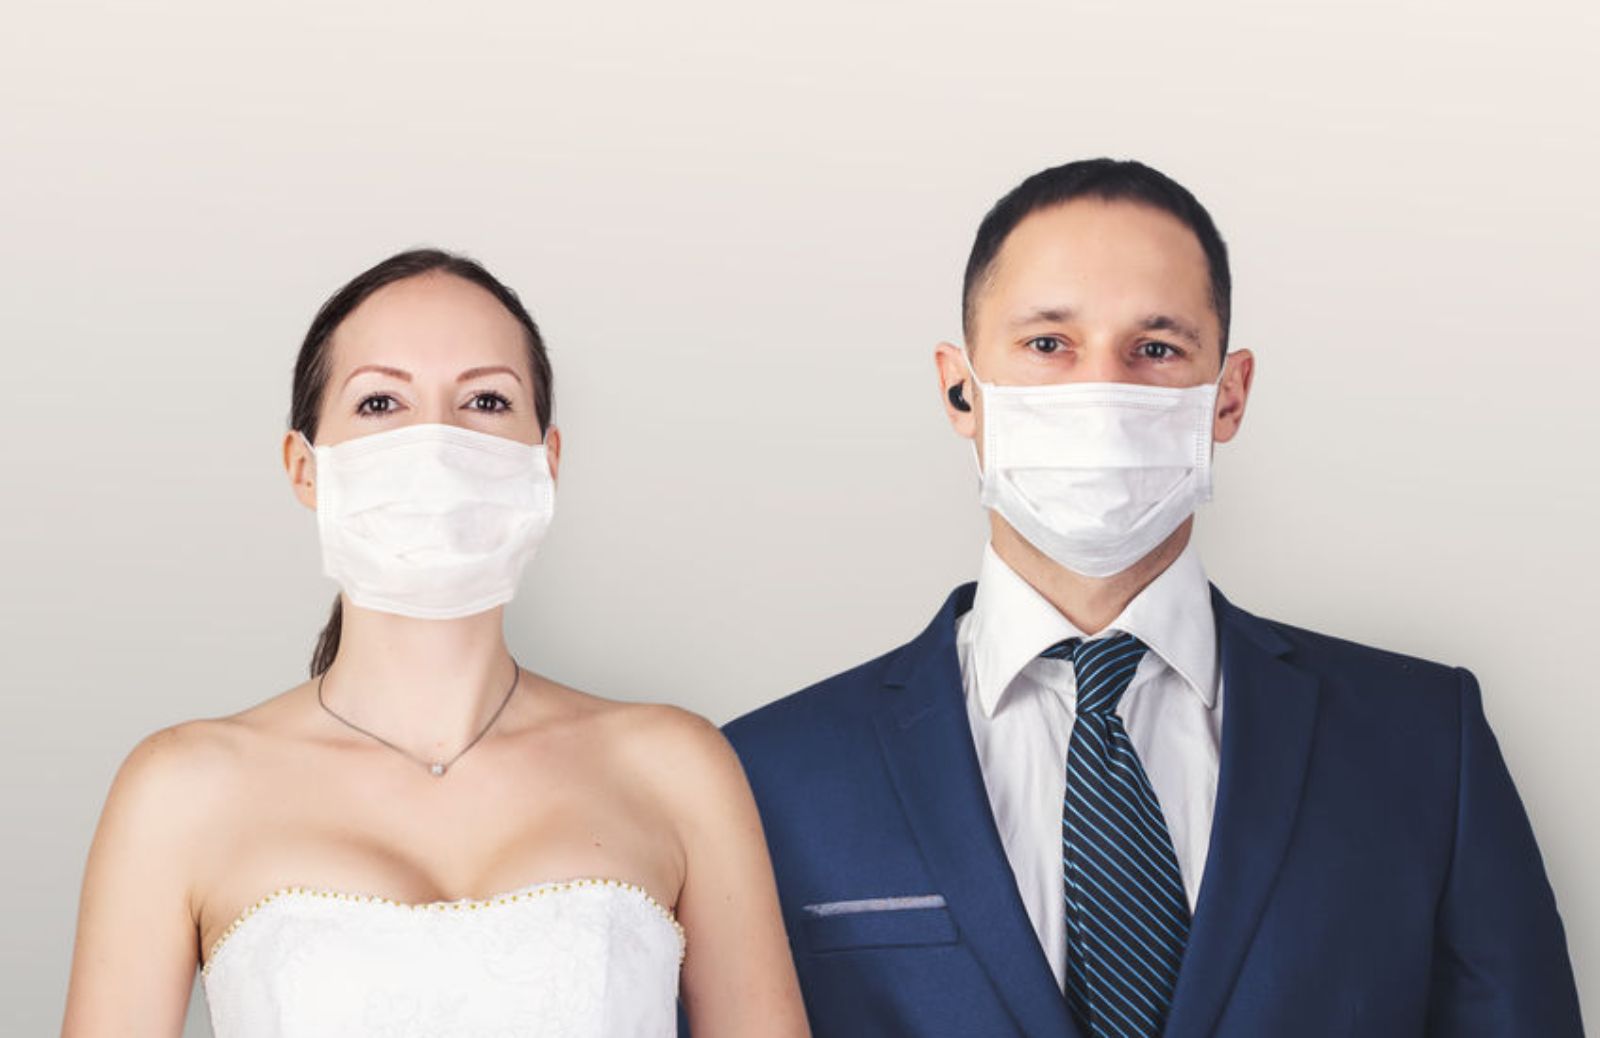 Matrimonio e coronavirus: le regole per sposarsi (in sicurezza)